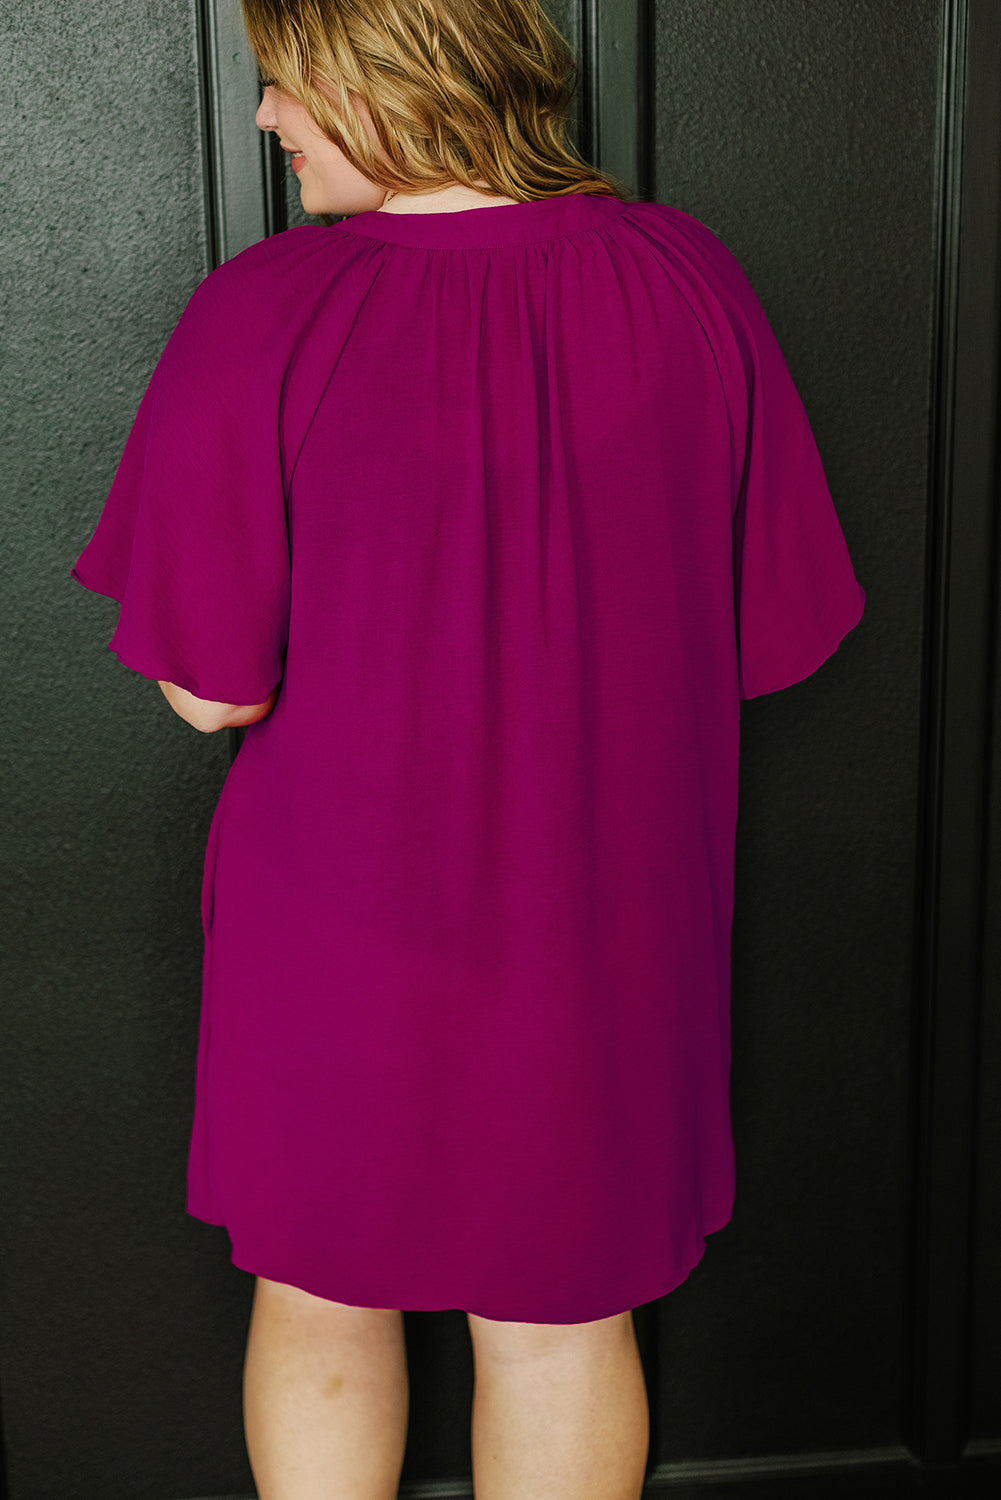 Rosarotes, plissiertes Kleid in Übergröße mit gekerbtem Ausschnitt und weiten Ärmeln